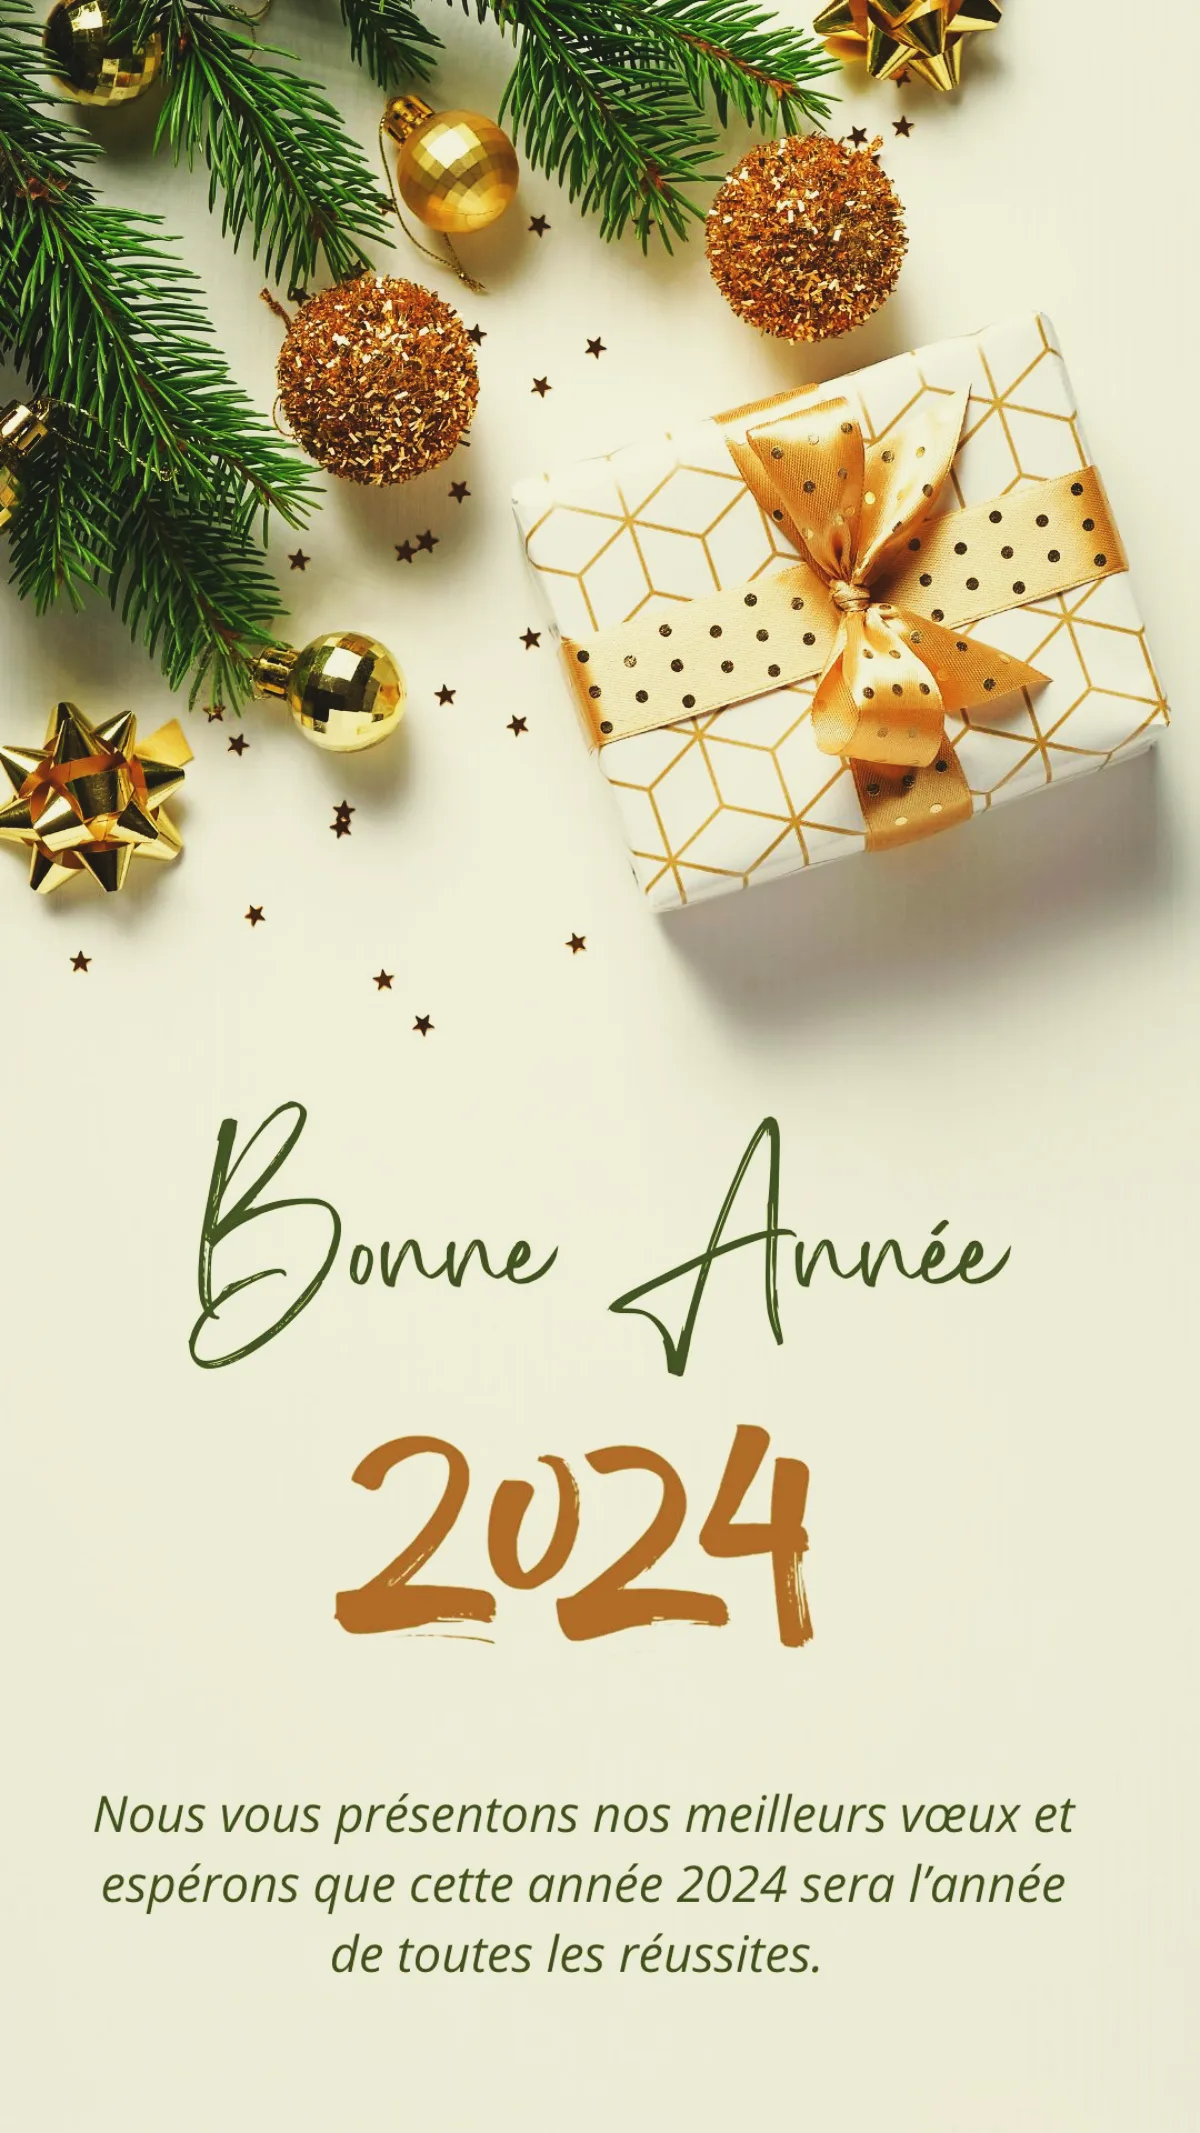 carte bonne année 2024 message sur fond blanc decorations de noel branches de pin et cadeaux